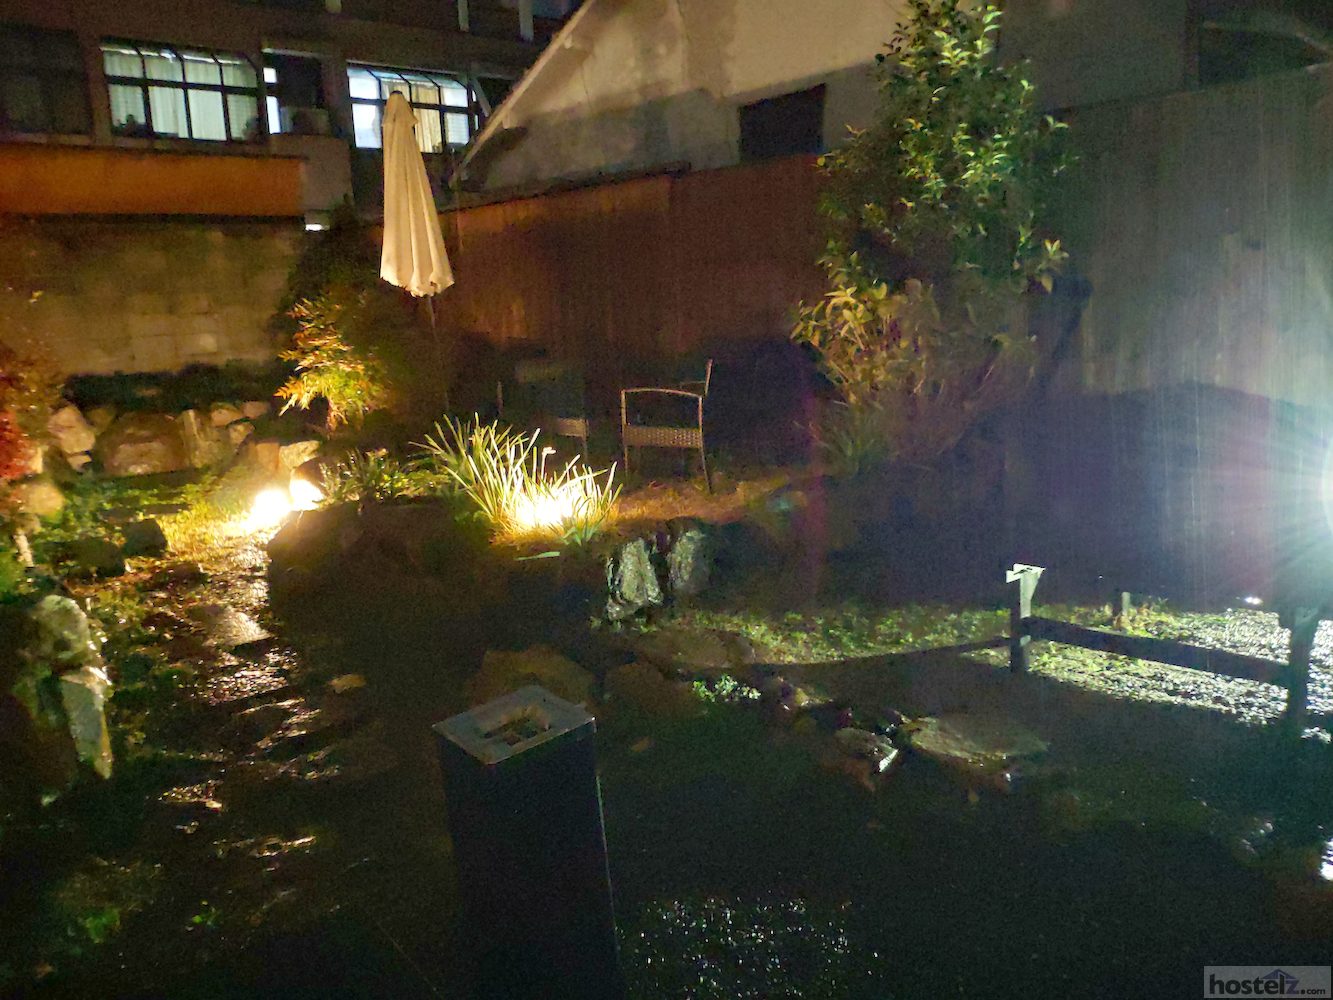 inner garden at night